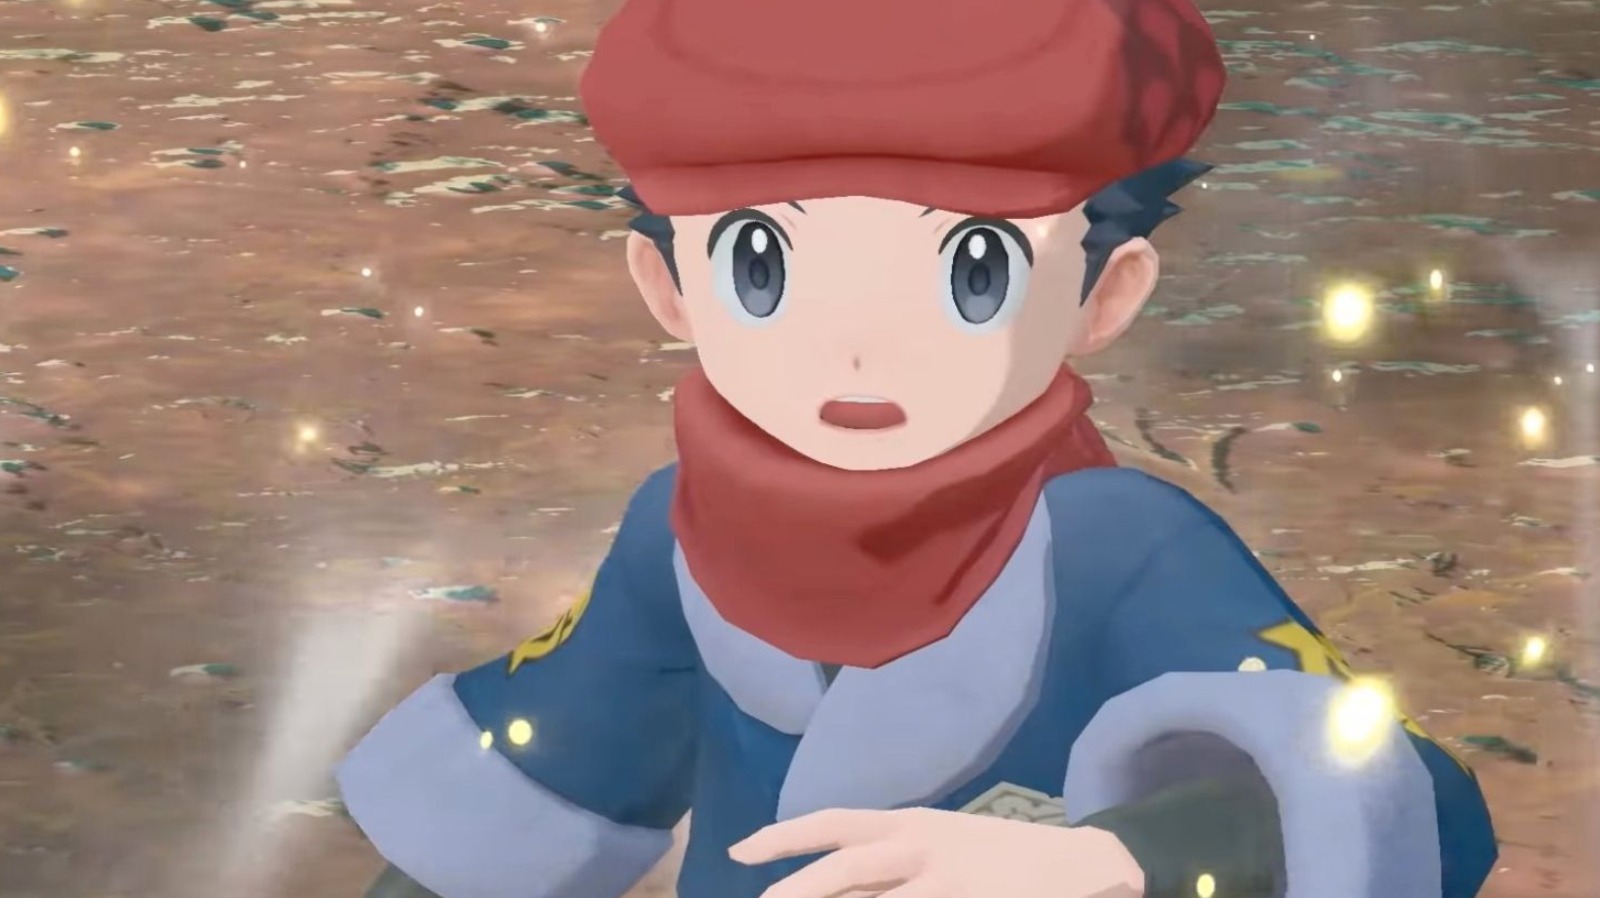 Shiny Lock Pokémon Arceus: What Pokémons can't be found as shiny